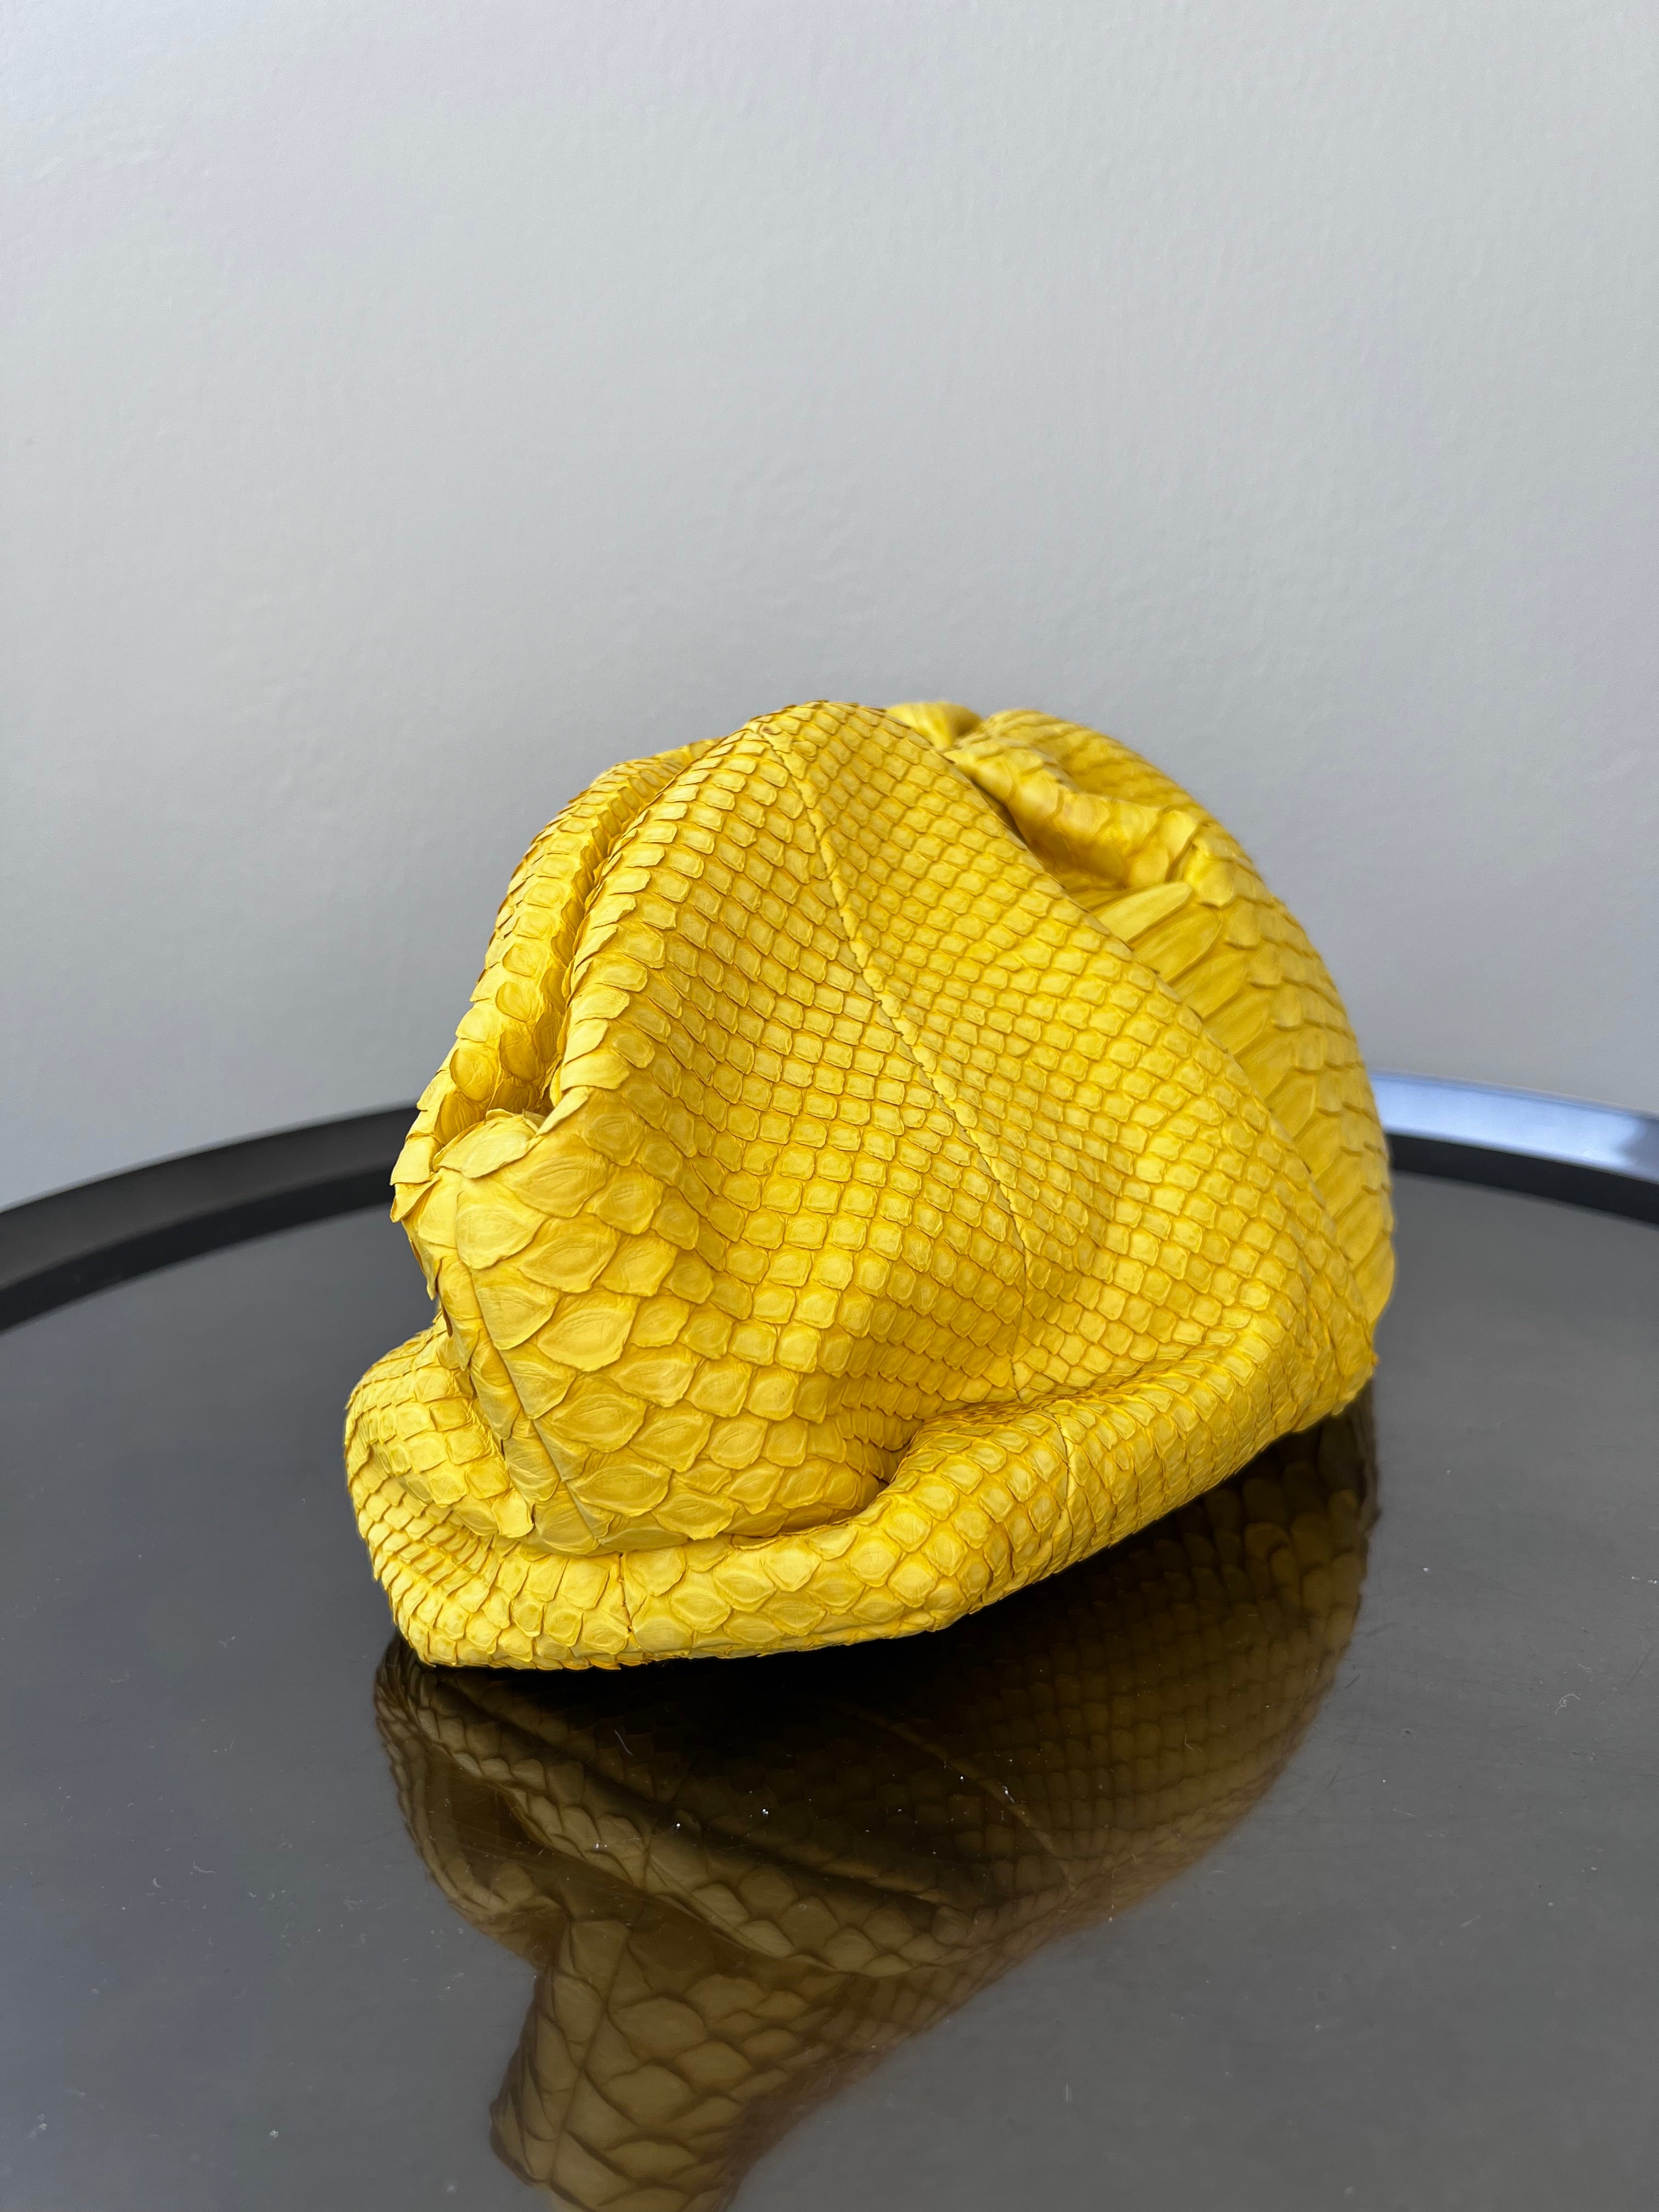 Lemon yellow jodie mini intrecciato rubber pouch - CECILEHOB